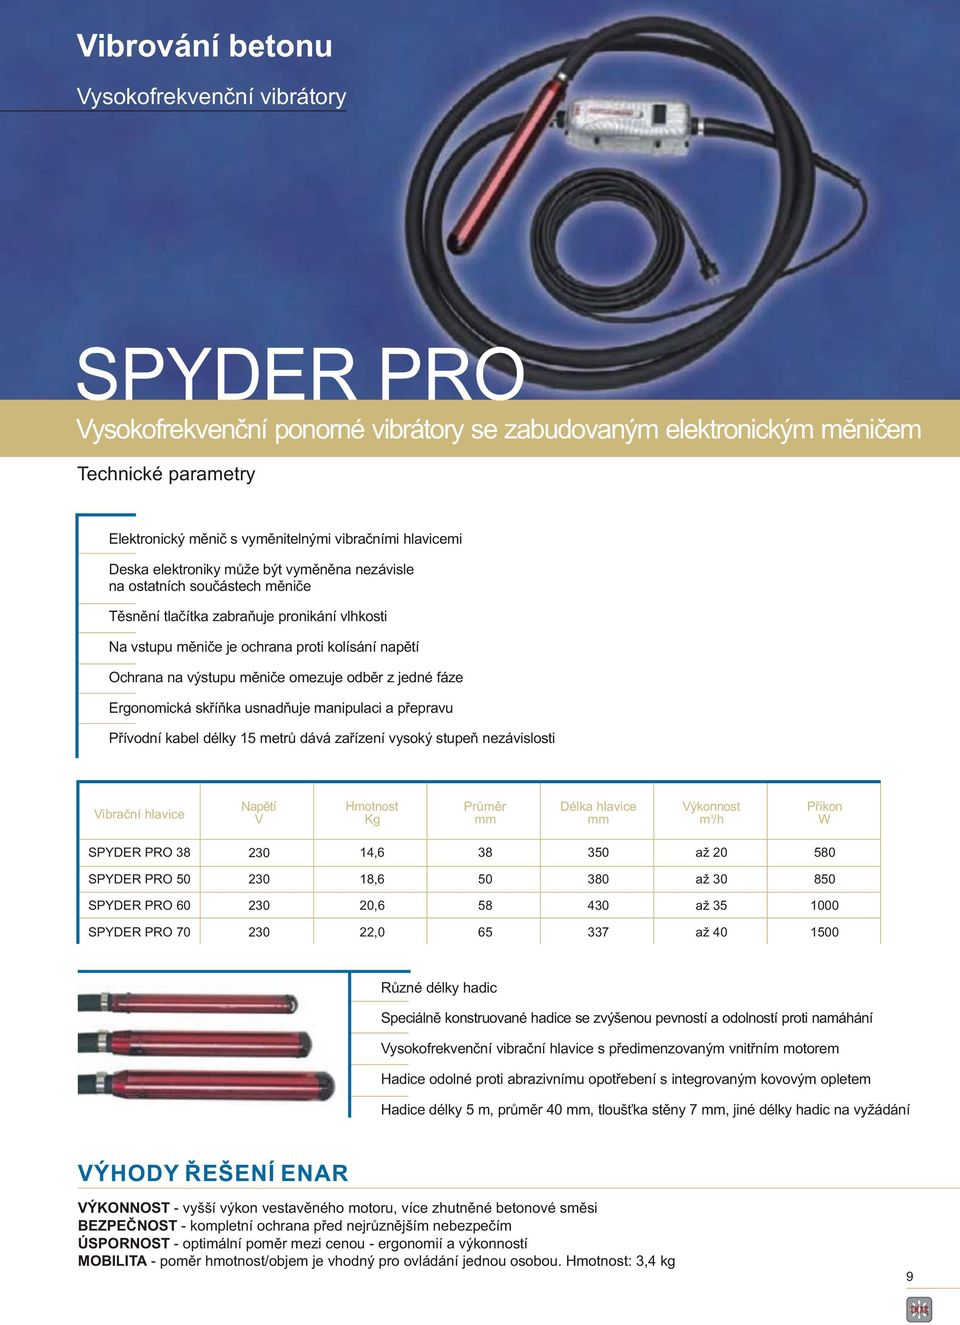 Ergonoická skříňka usnadňuje anipulaci a přepravu Přívodní kabel délky 15 etrů dává zařízení vysoký stupeň nezávislosti Vibrační hlavice Napětí V Průěr hlavice nost /h Příkon W SPYDER PRO 8 SPYDER